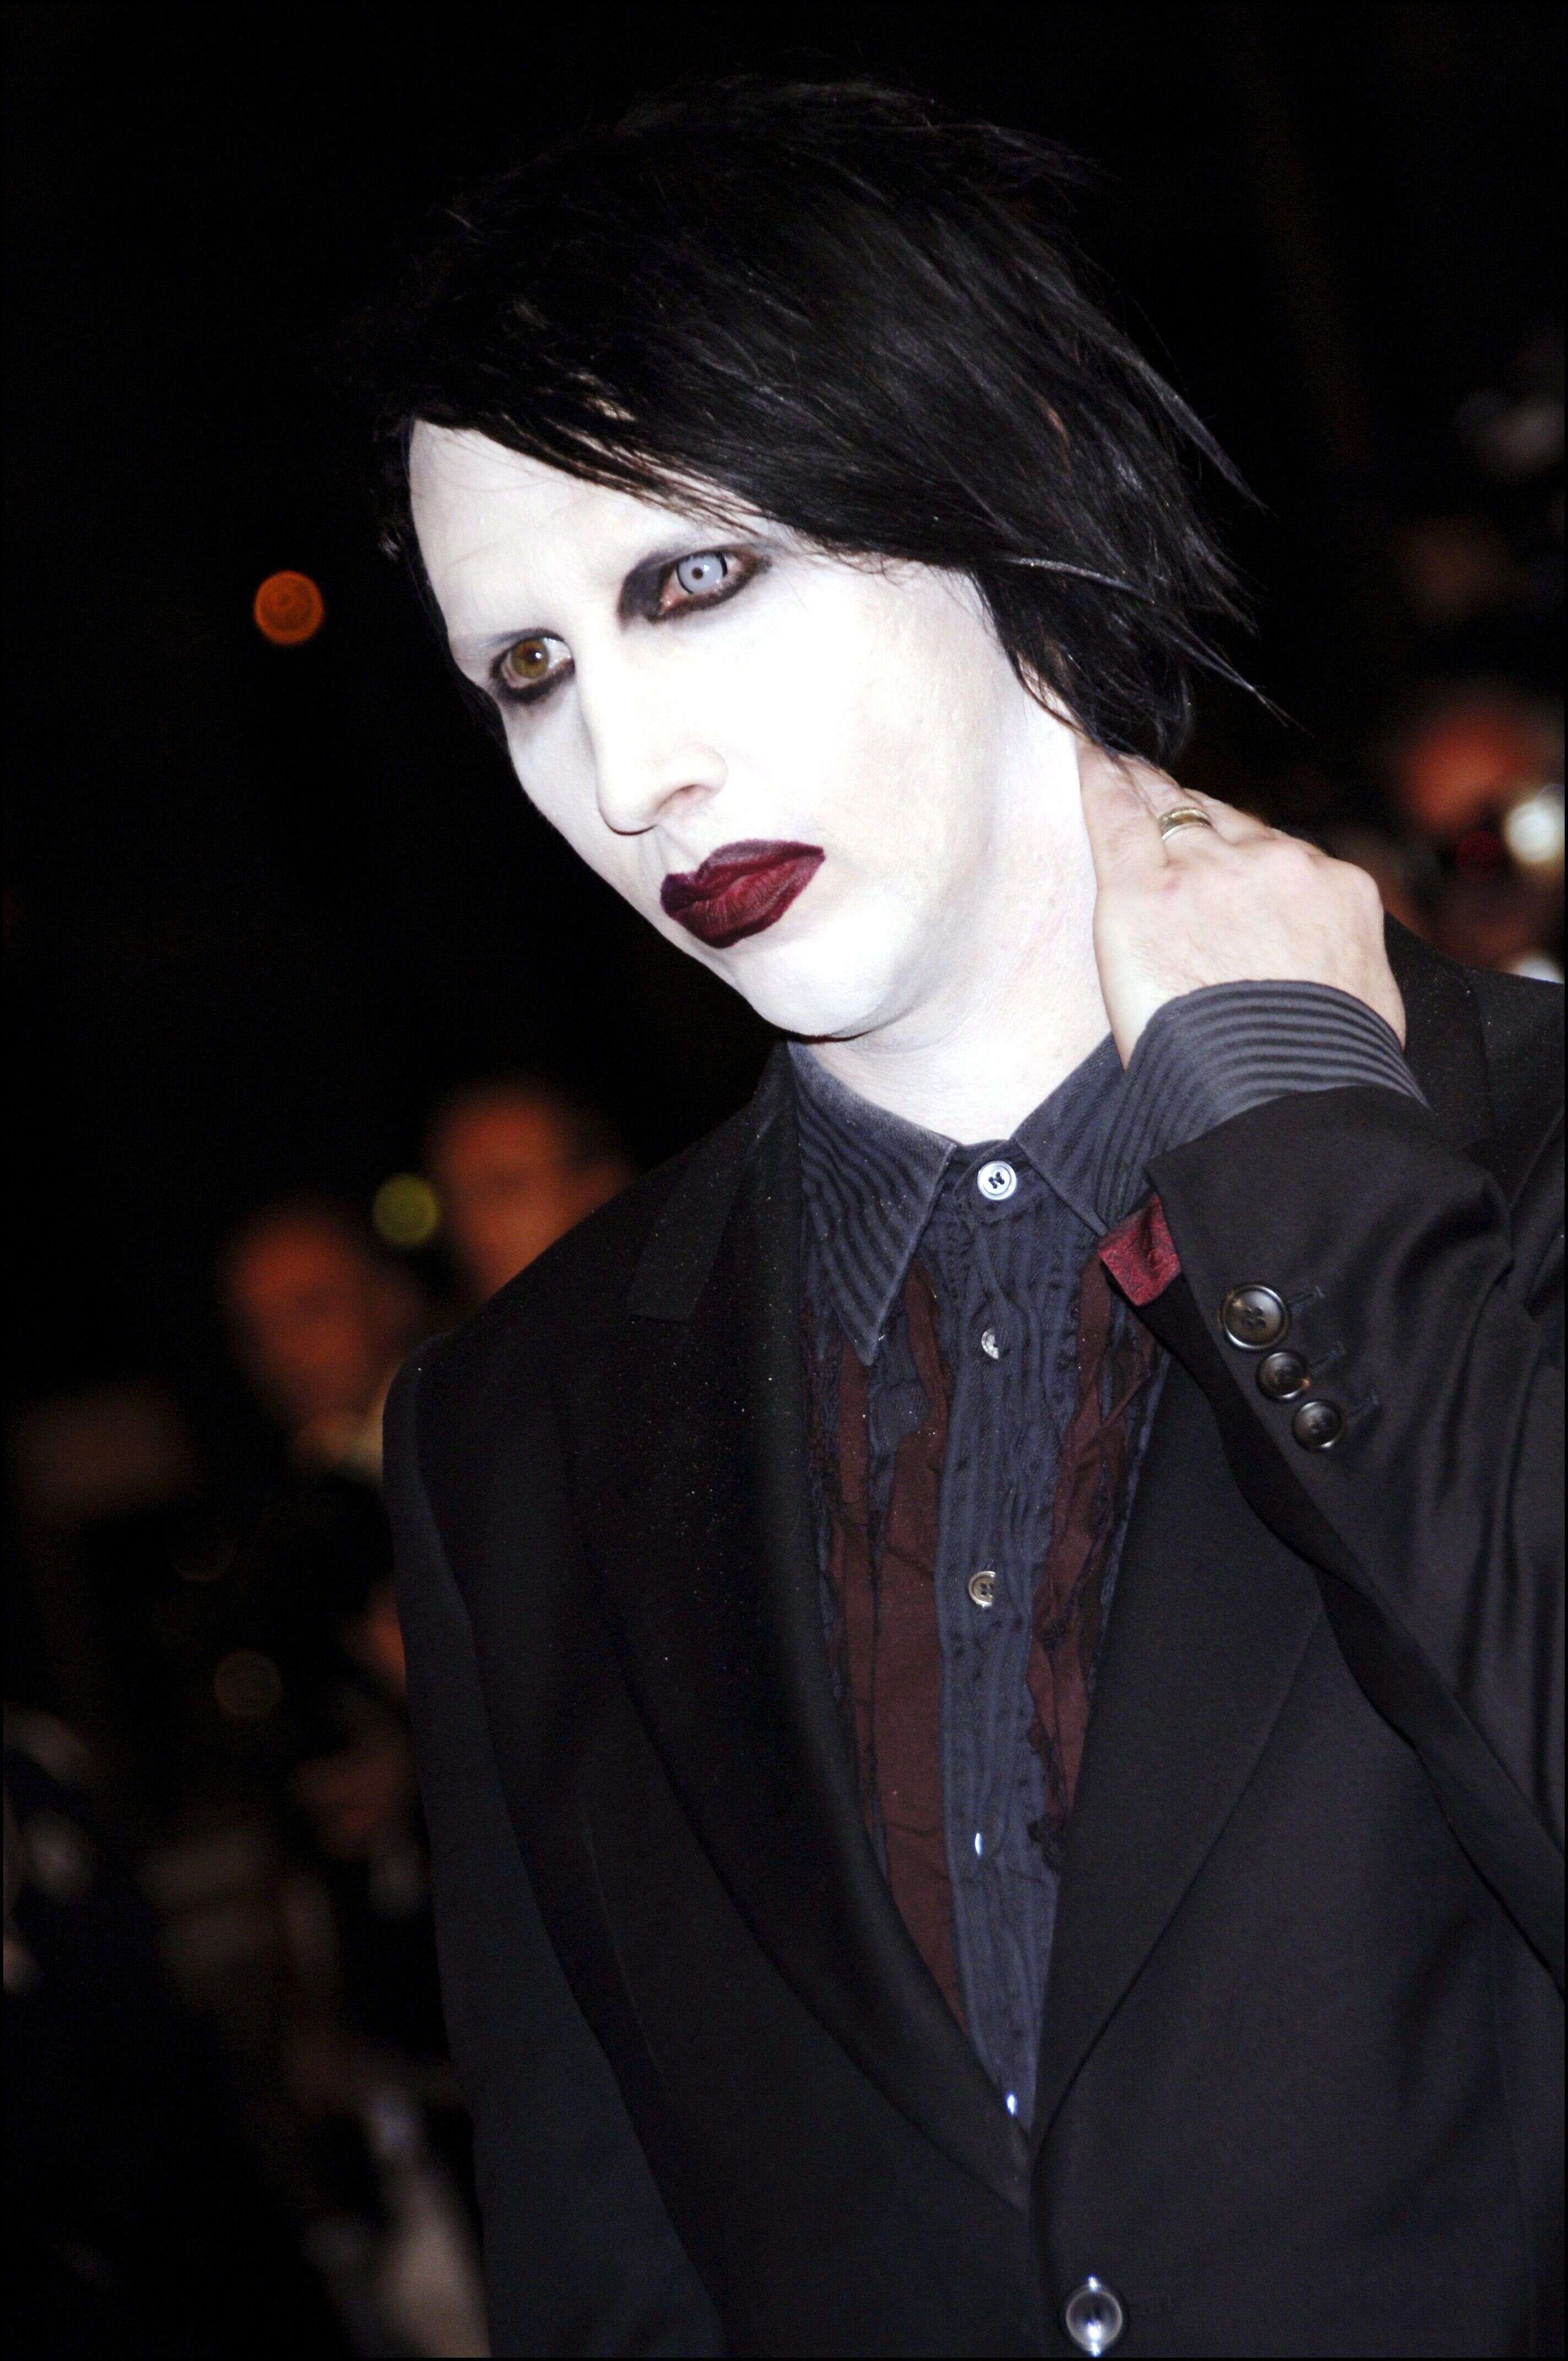 Marylin Manson est accusé de viols et harcèlements par plusieurs femmes, dont son ex-compagne l'actrice Evan Rachel Wood. Des accusations qu'il nie. (photo d'archive de Marylin Manson au Festival de Cannes en mai 2006)